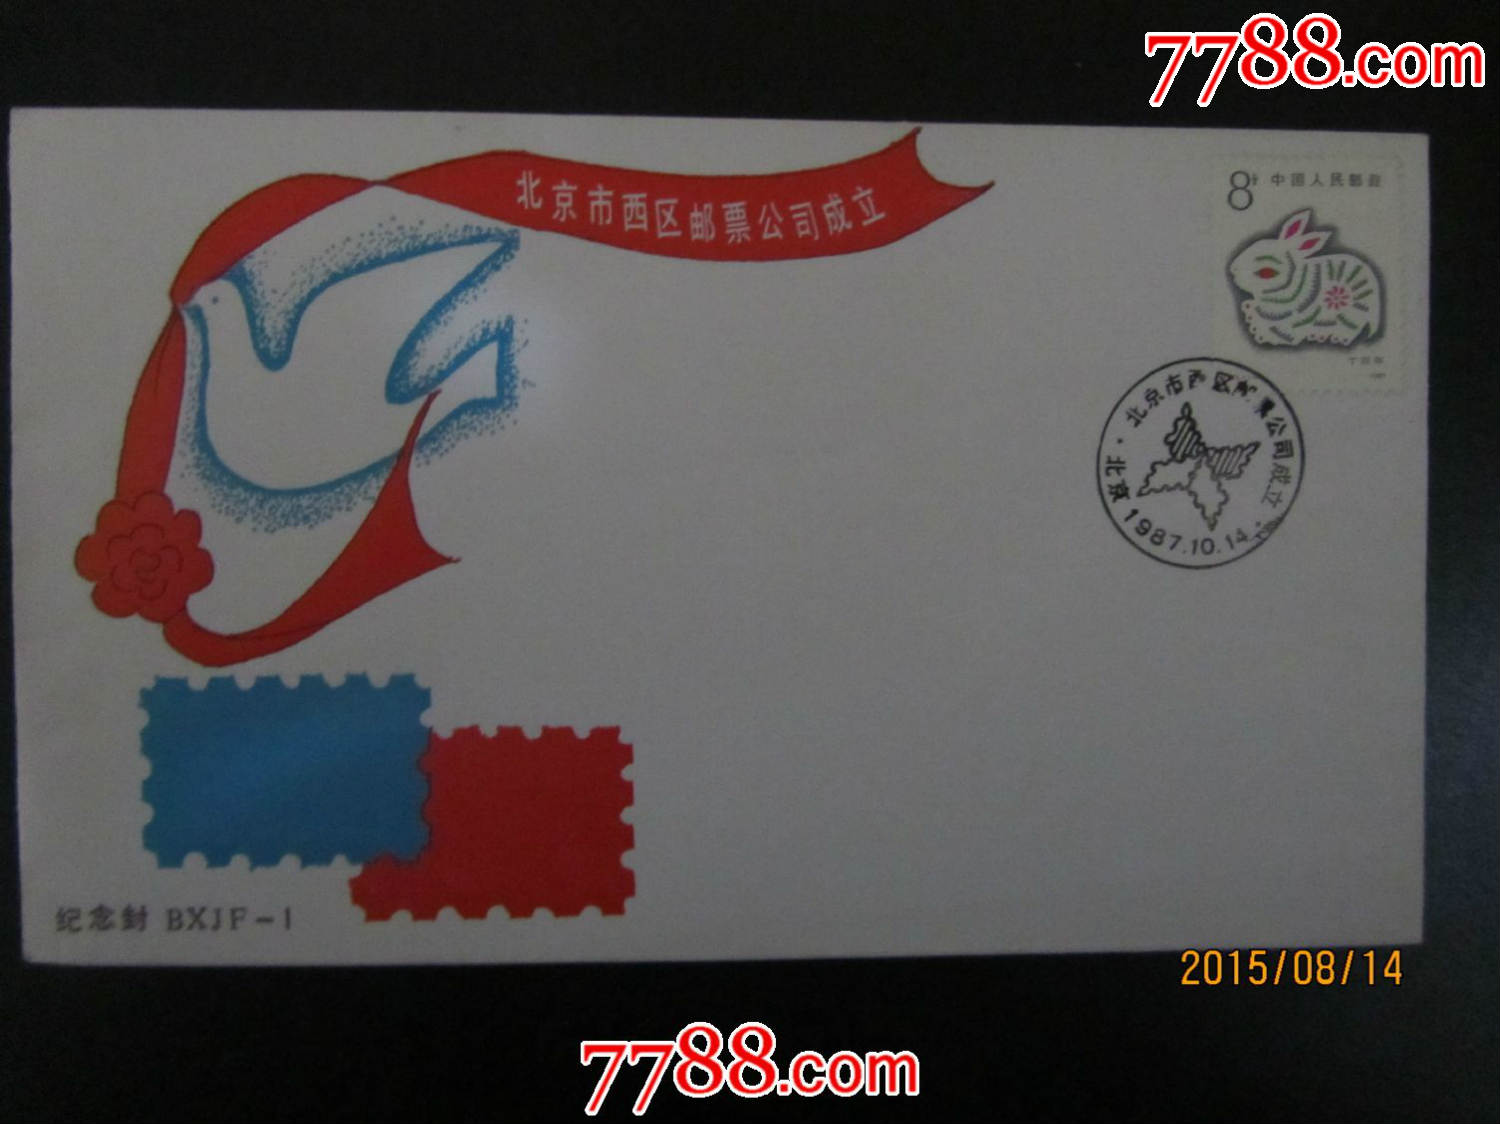 北京西区邮票公司成立纪念封-价格:5元-se317